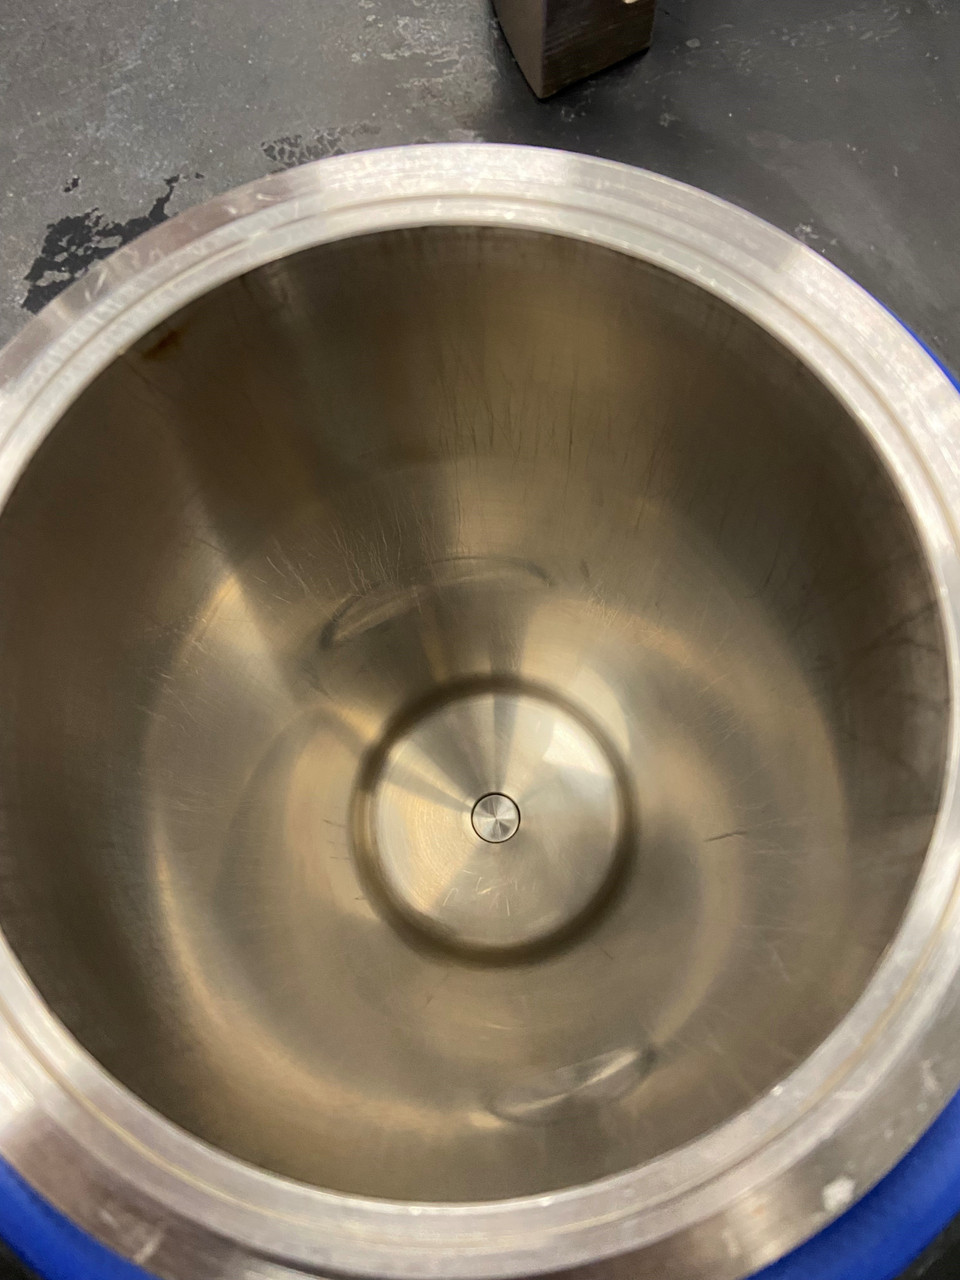 Parr 4552 2 gallon Alloy C276 Pressure Reactor | HiTechTrader.com